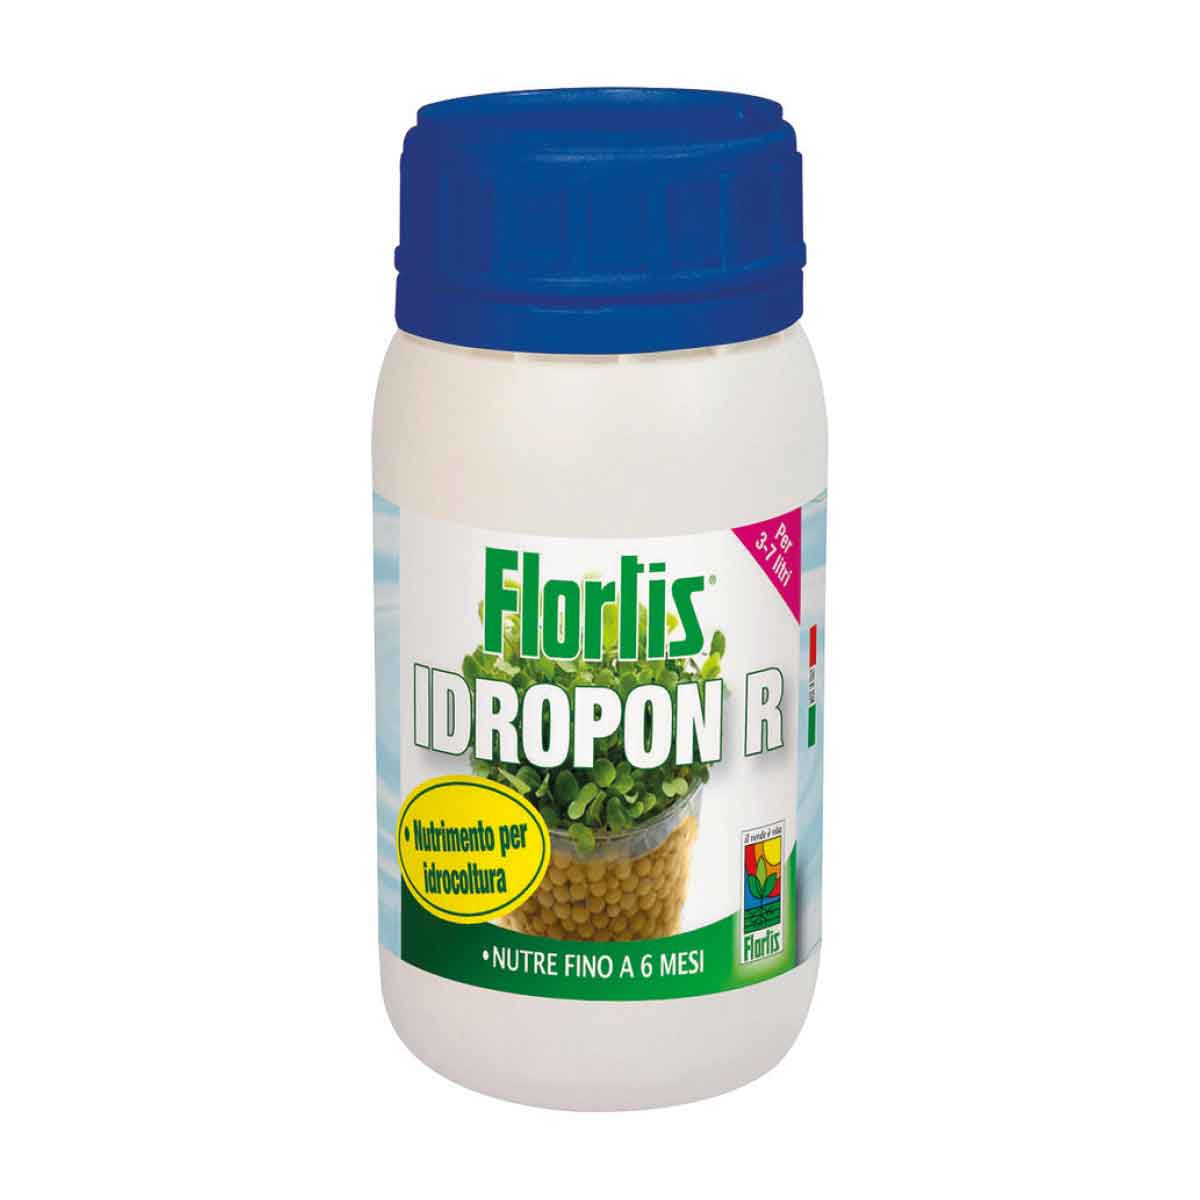 Flortis Idropon R